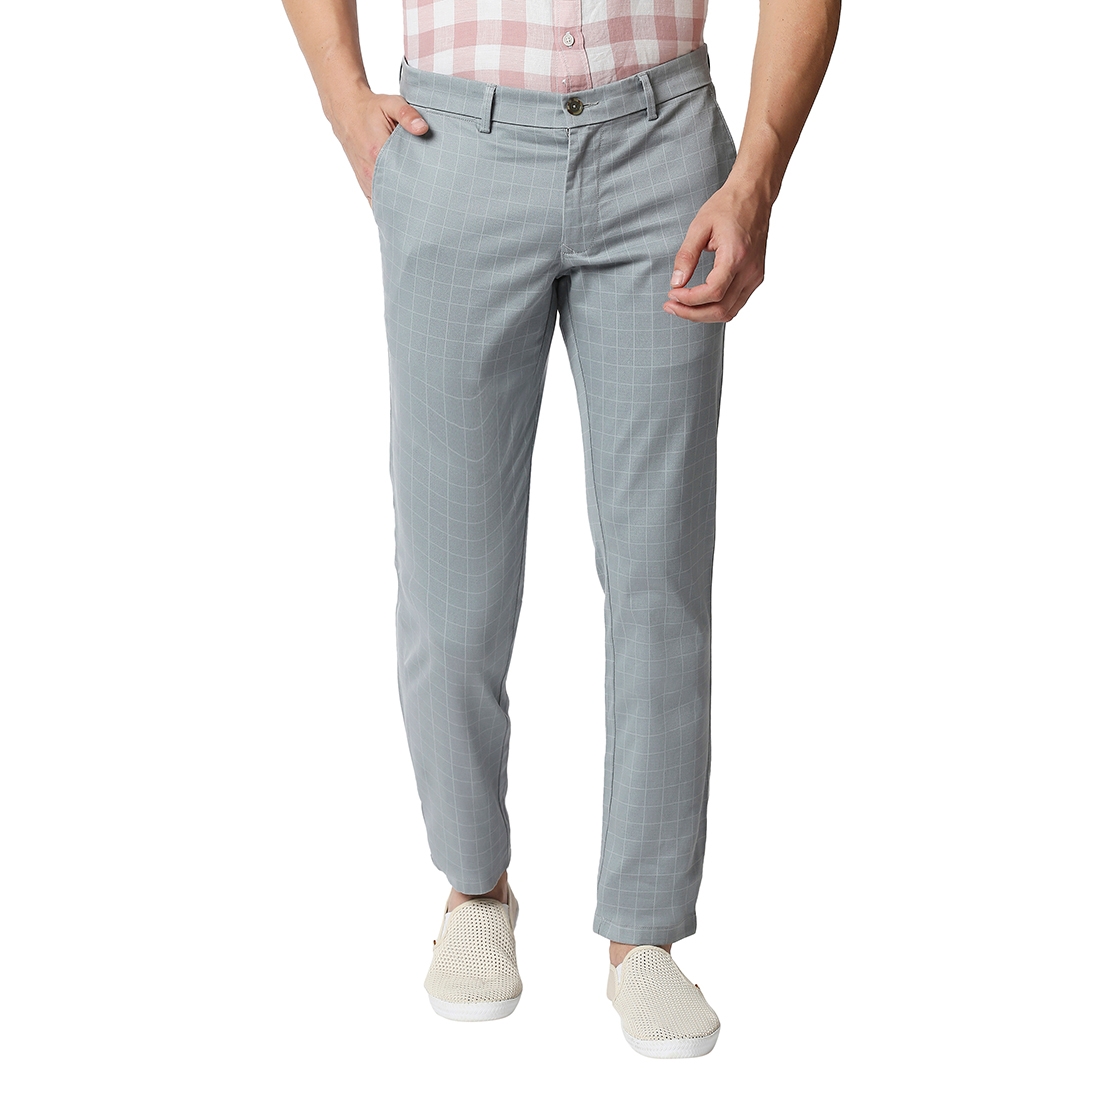 Basics | Men's Light Blue Cotton Blend Checked Trouser 0